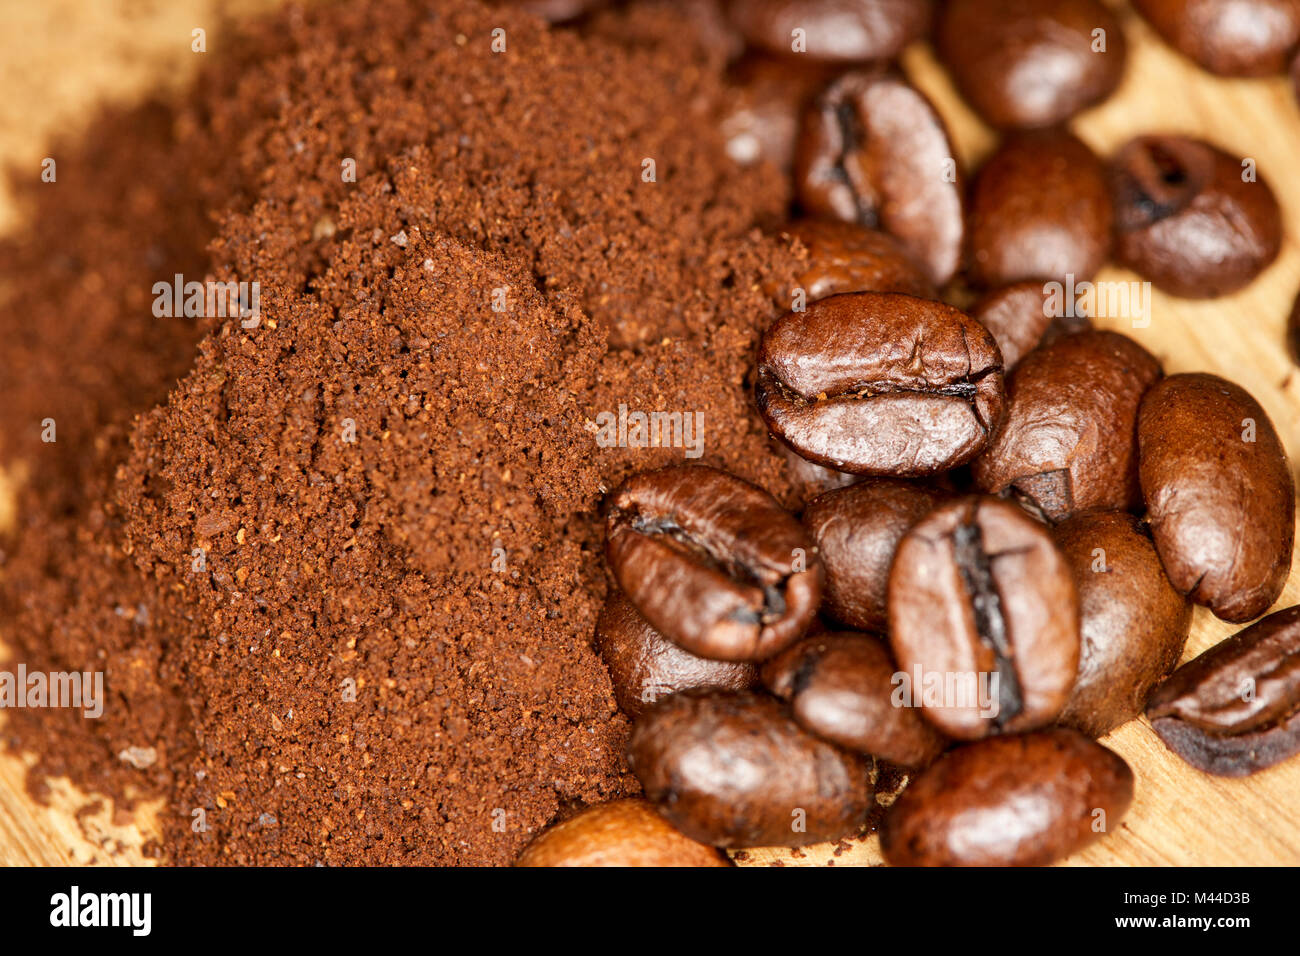 Grob mahlen frisch gemahlenen Kaffee mit Mischung aus Arabica und Robusta  Kaffeebohnen Stockfotografie - Alamy